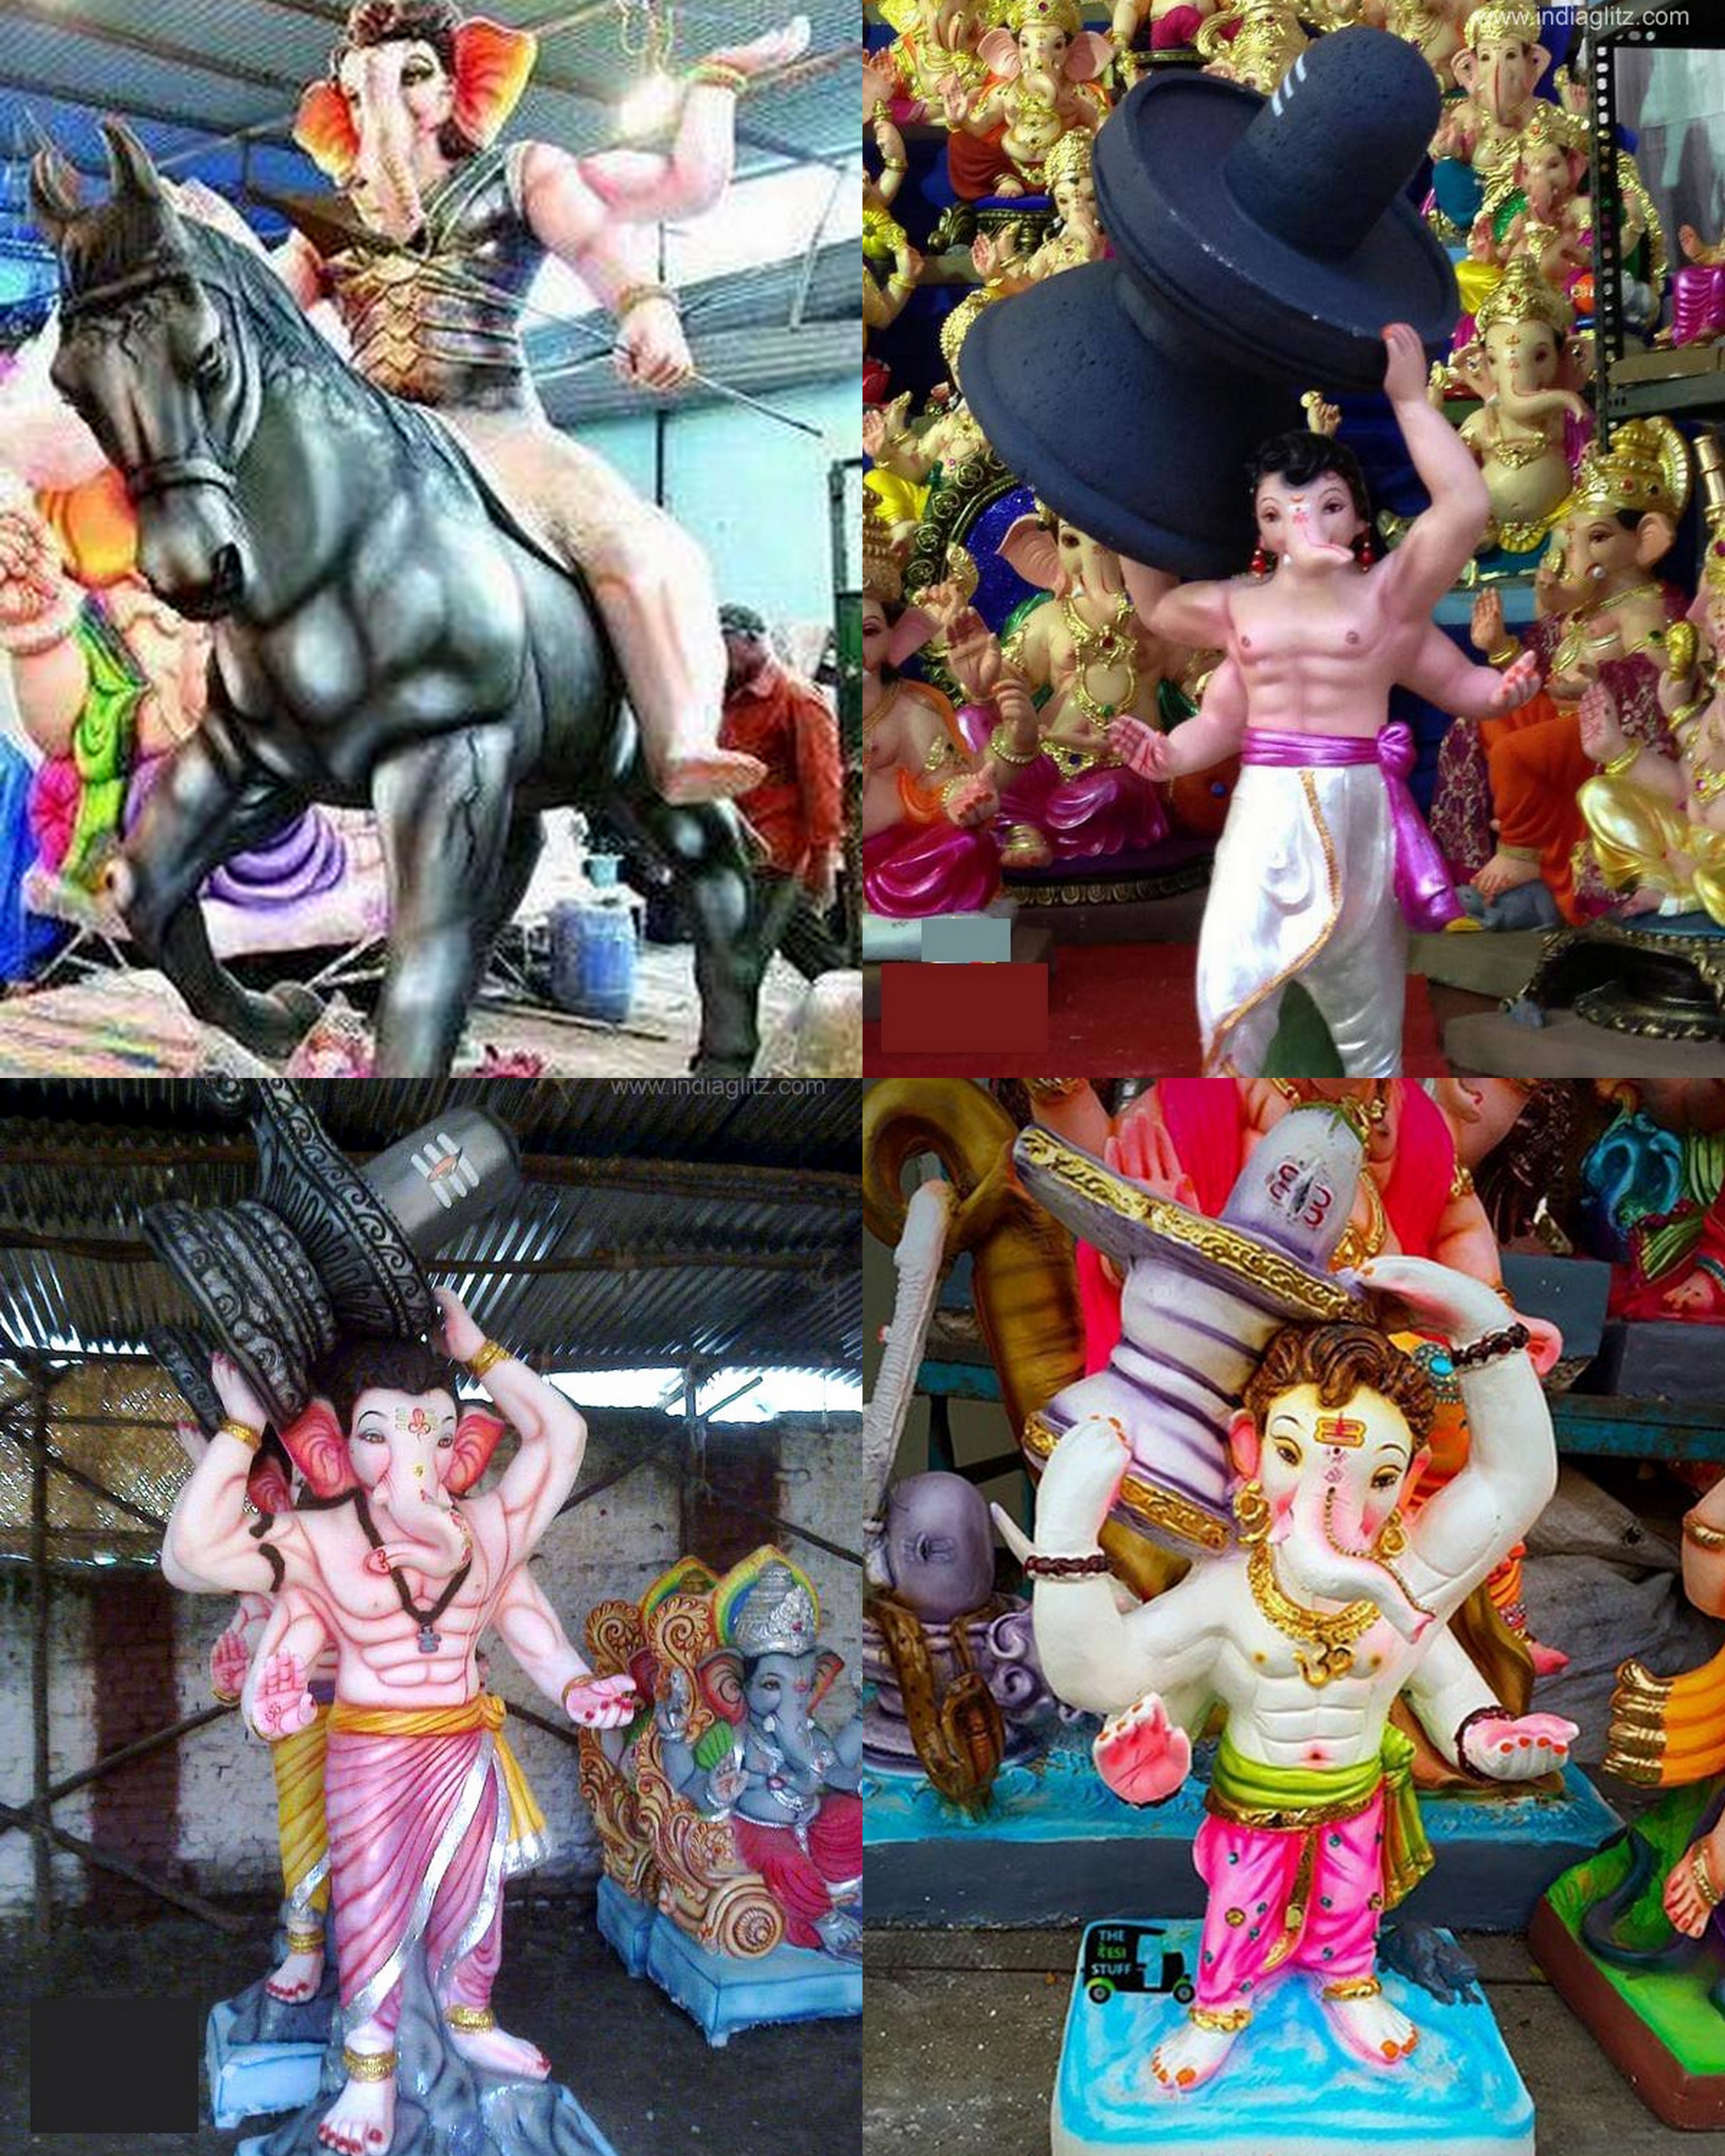 Baahubali inspired ganesh idols in India